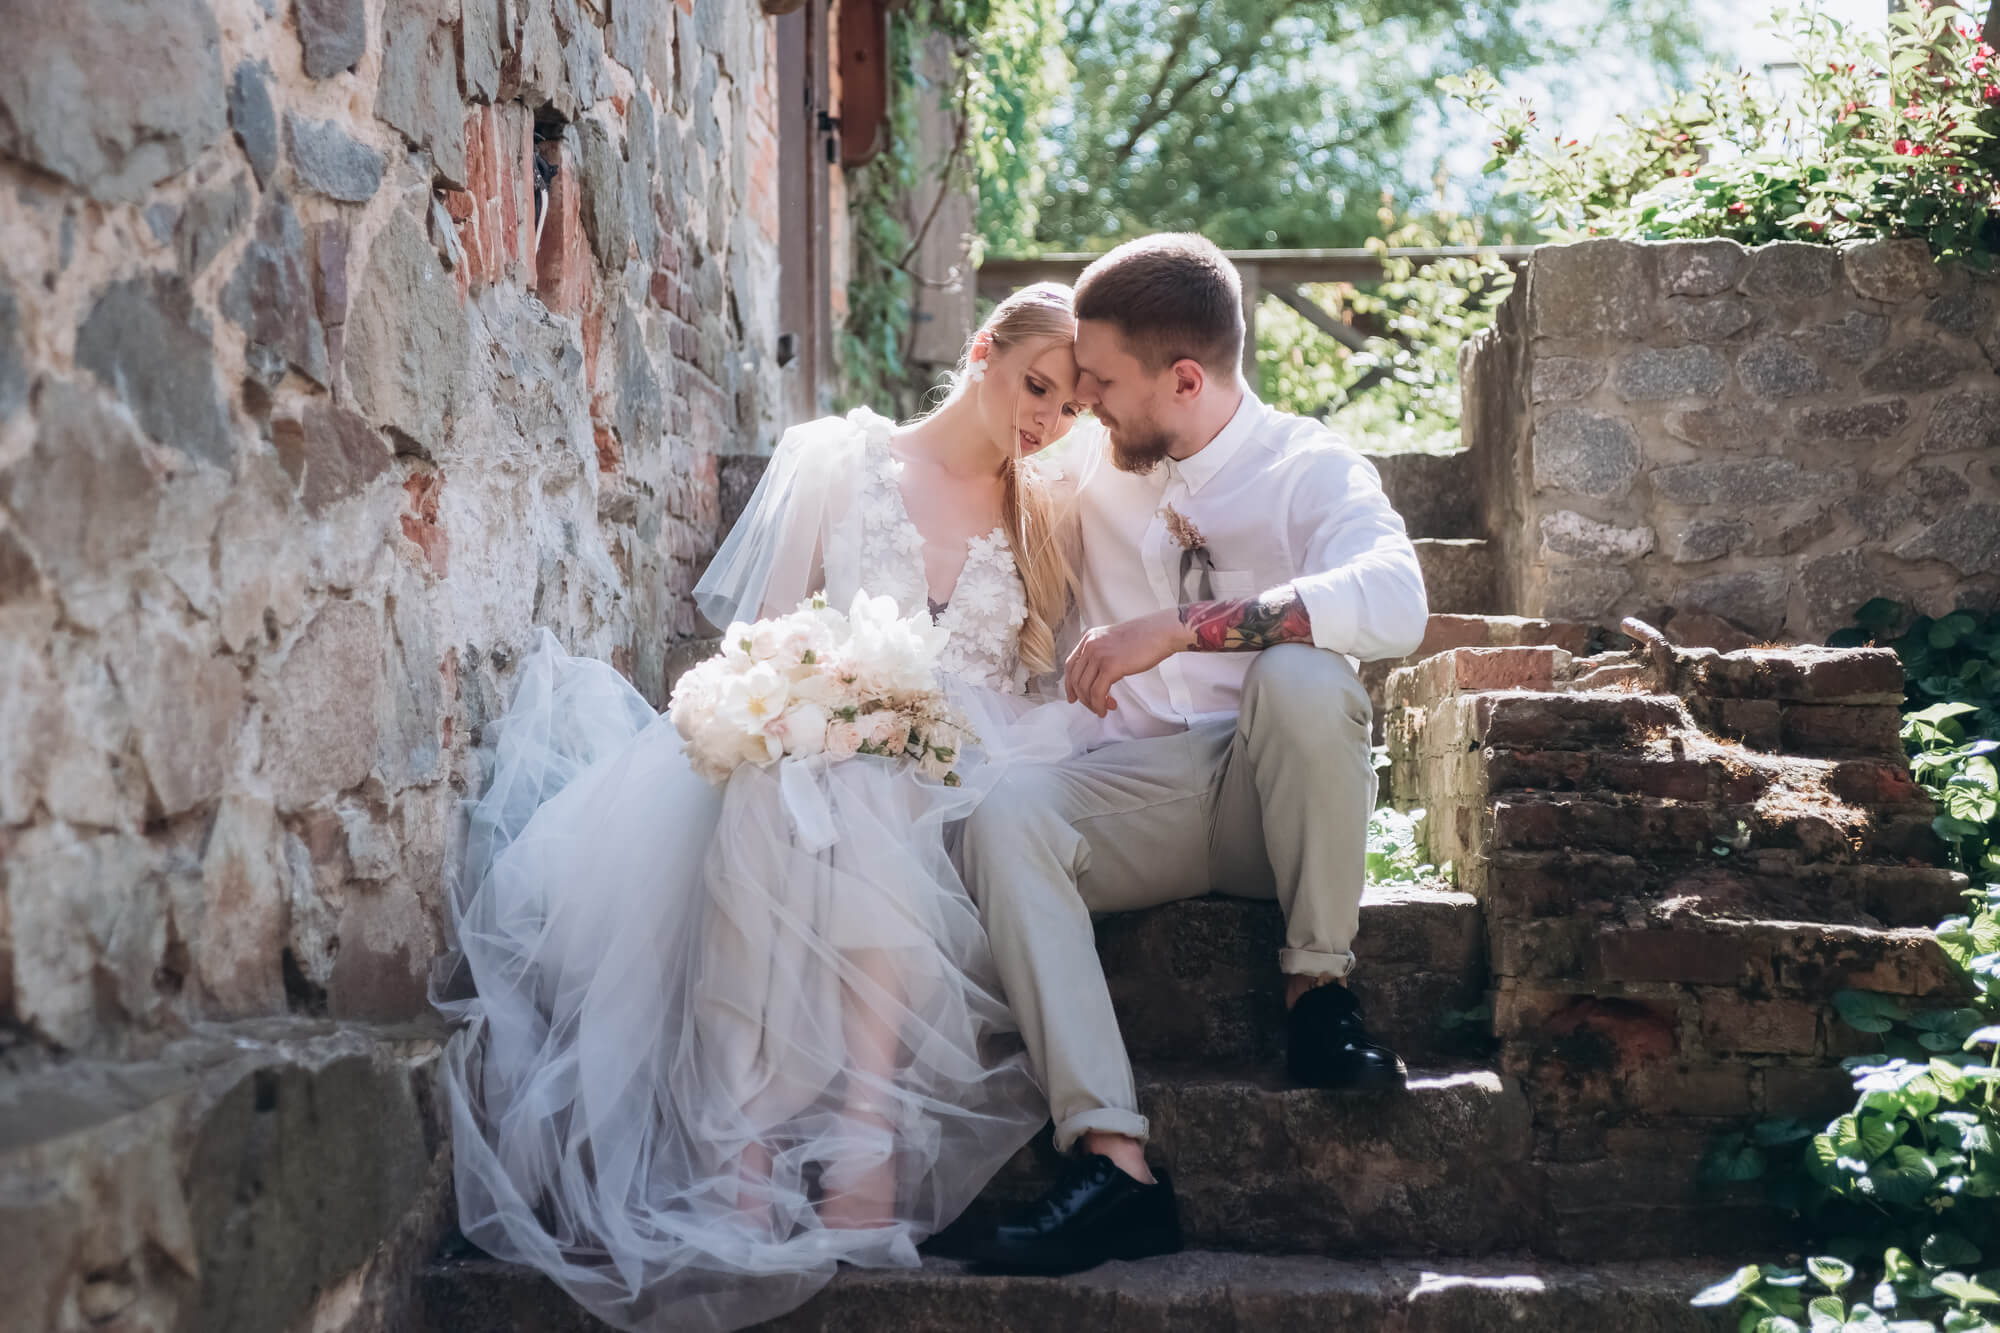 bride and groom sitting together hugging on steps